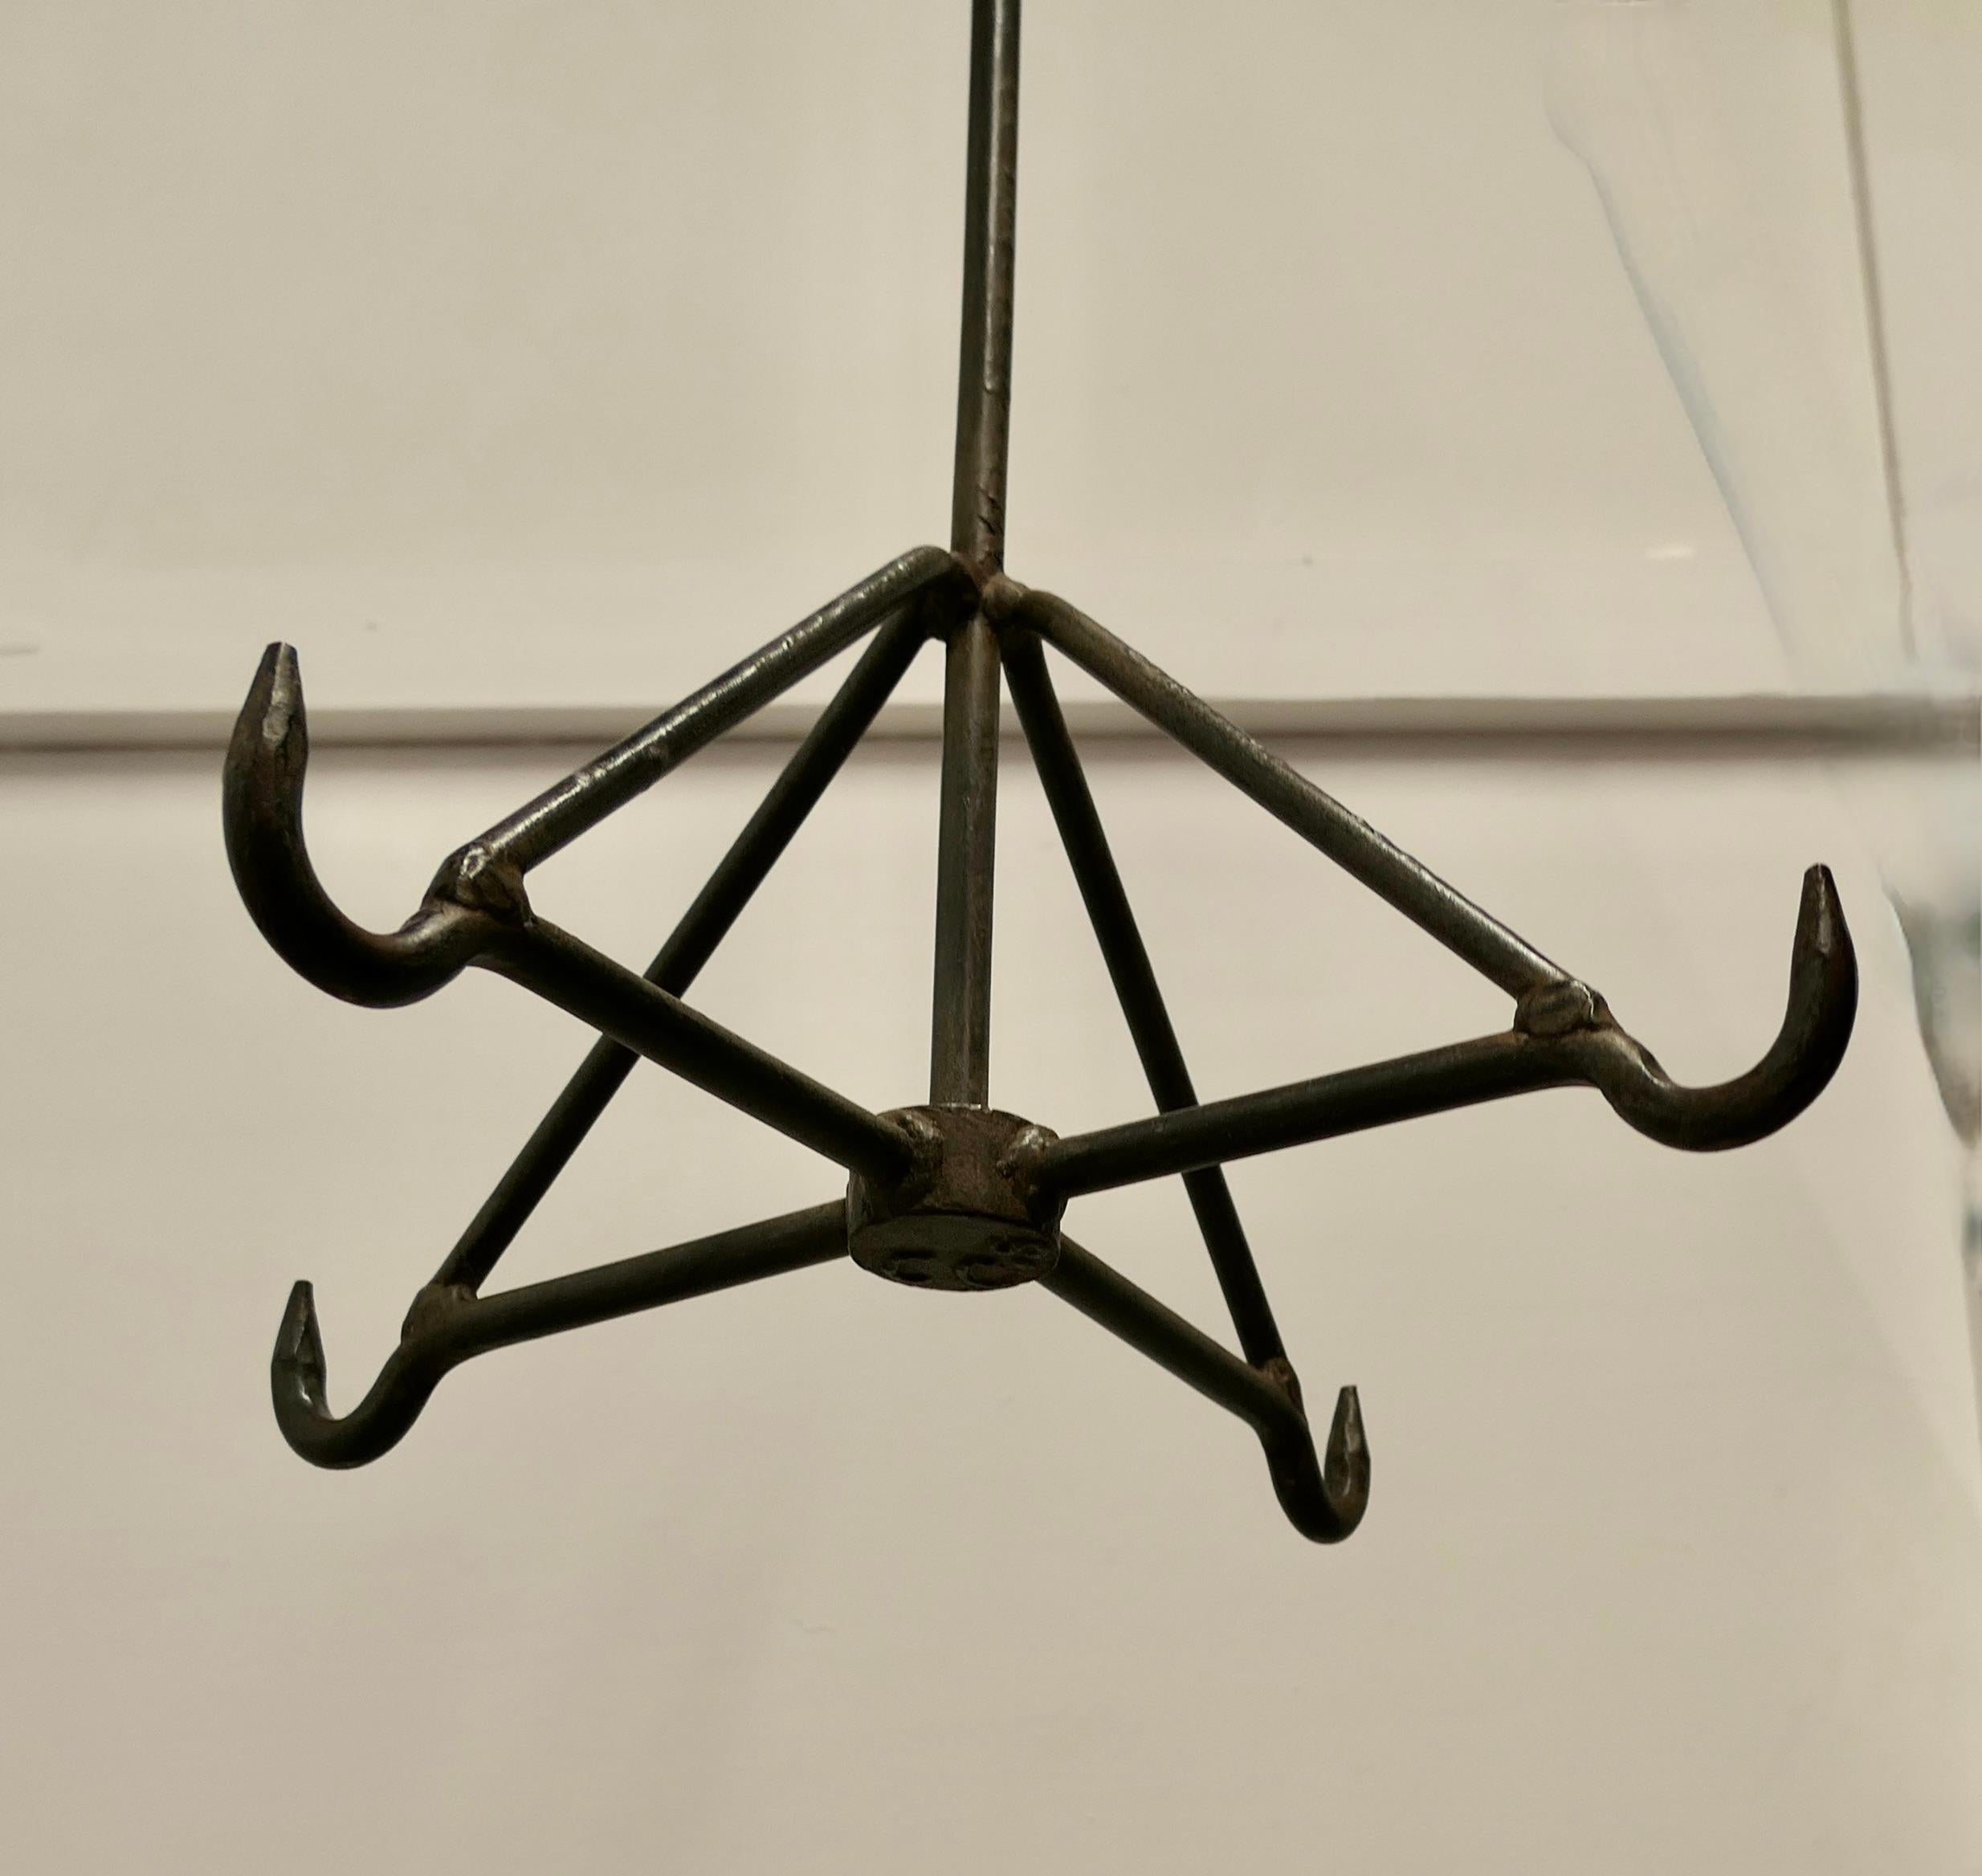  Blacksmith Made Iron Game Hanger, Kitchen Utensil or Pot Hanger   For Sale 1